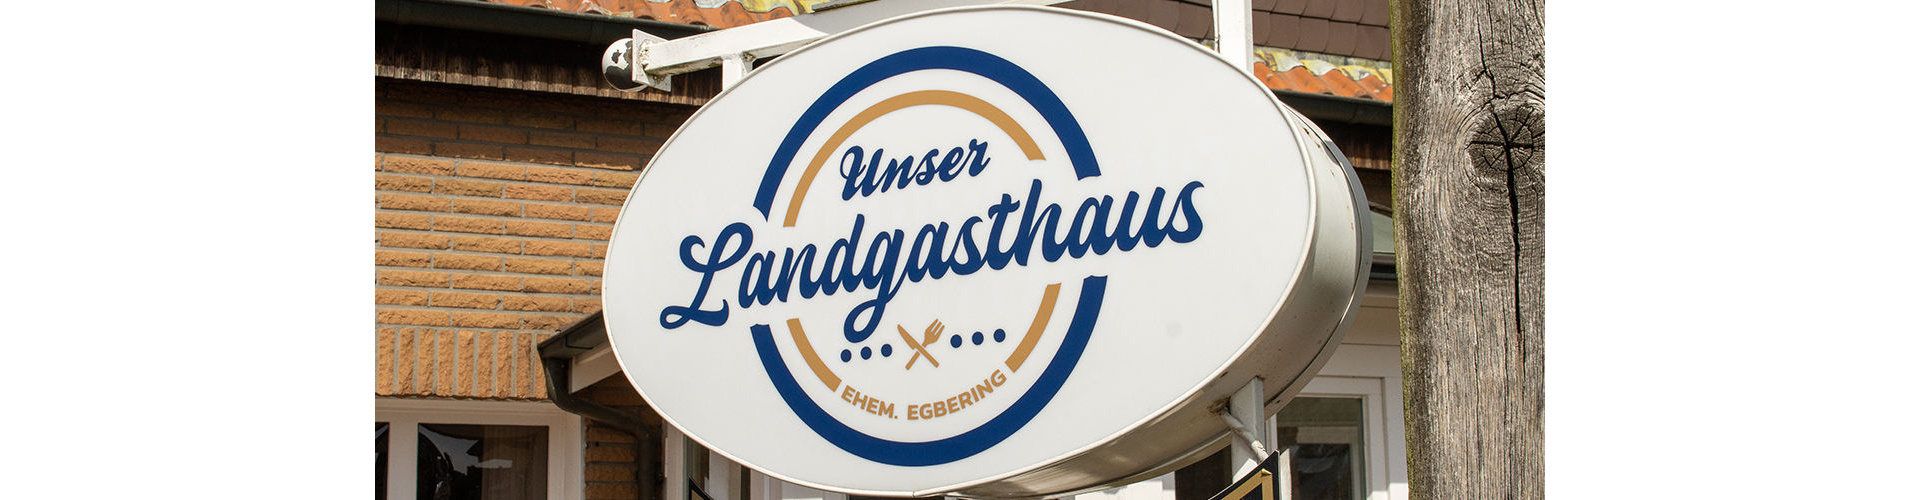 Logo Landgasthaus Egbering